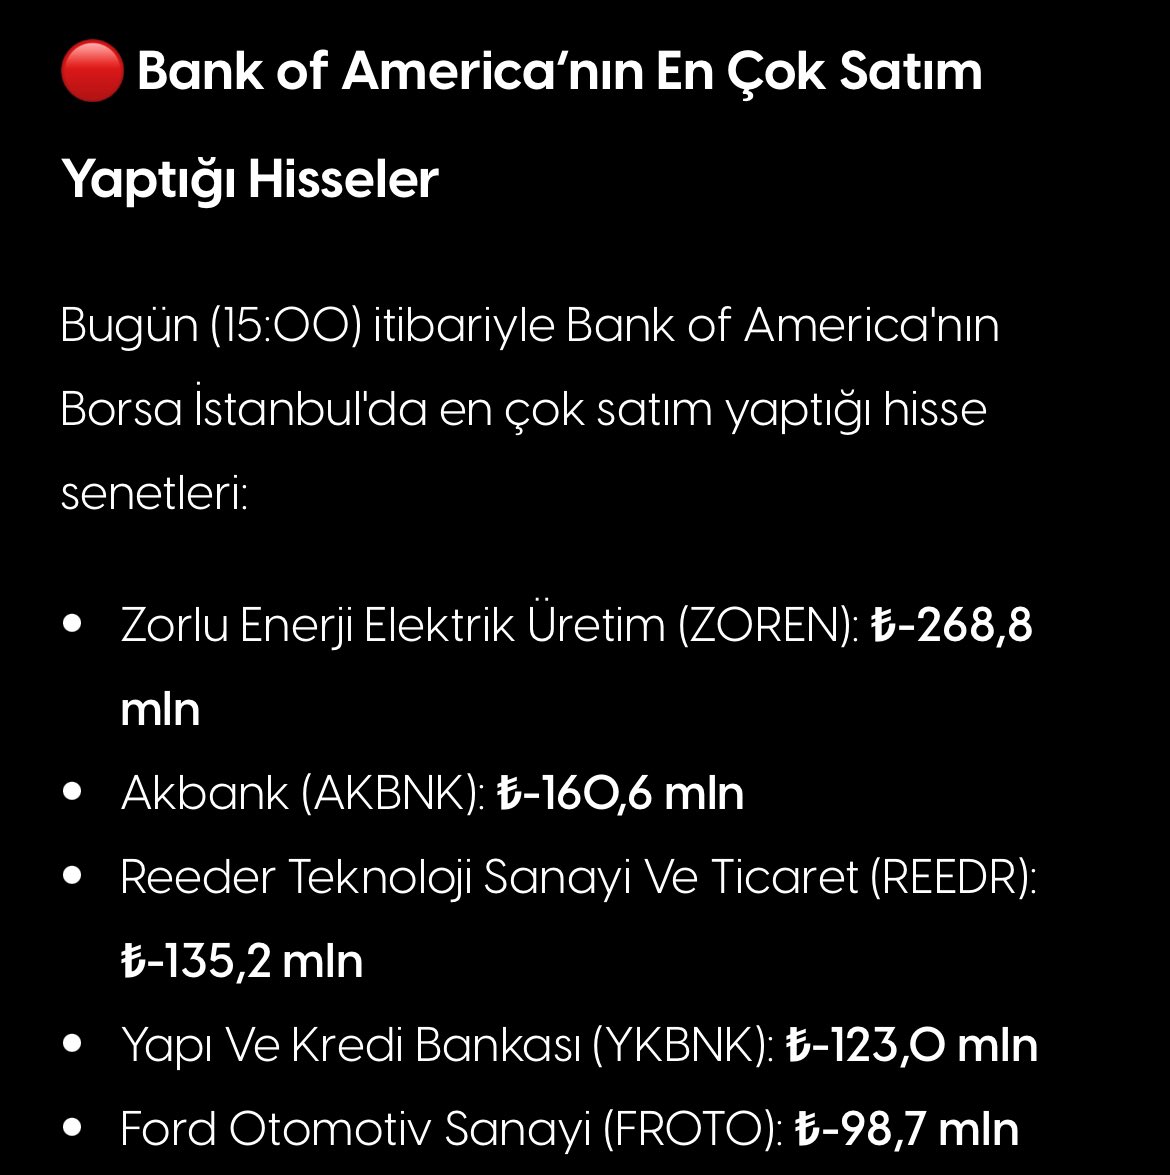 🔴 Bank Of America En Çok Satım Yaptığı Hisseler

#borsa #bist #bist100 #endeks #bofa #halkaarz #zoren #akbnk #reedr #ykbnk #froto